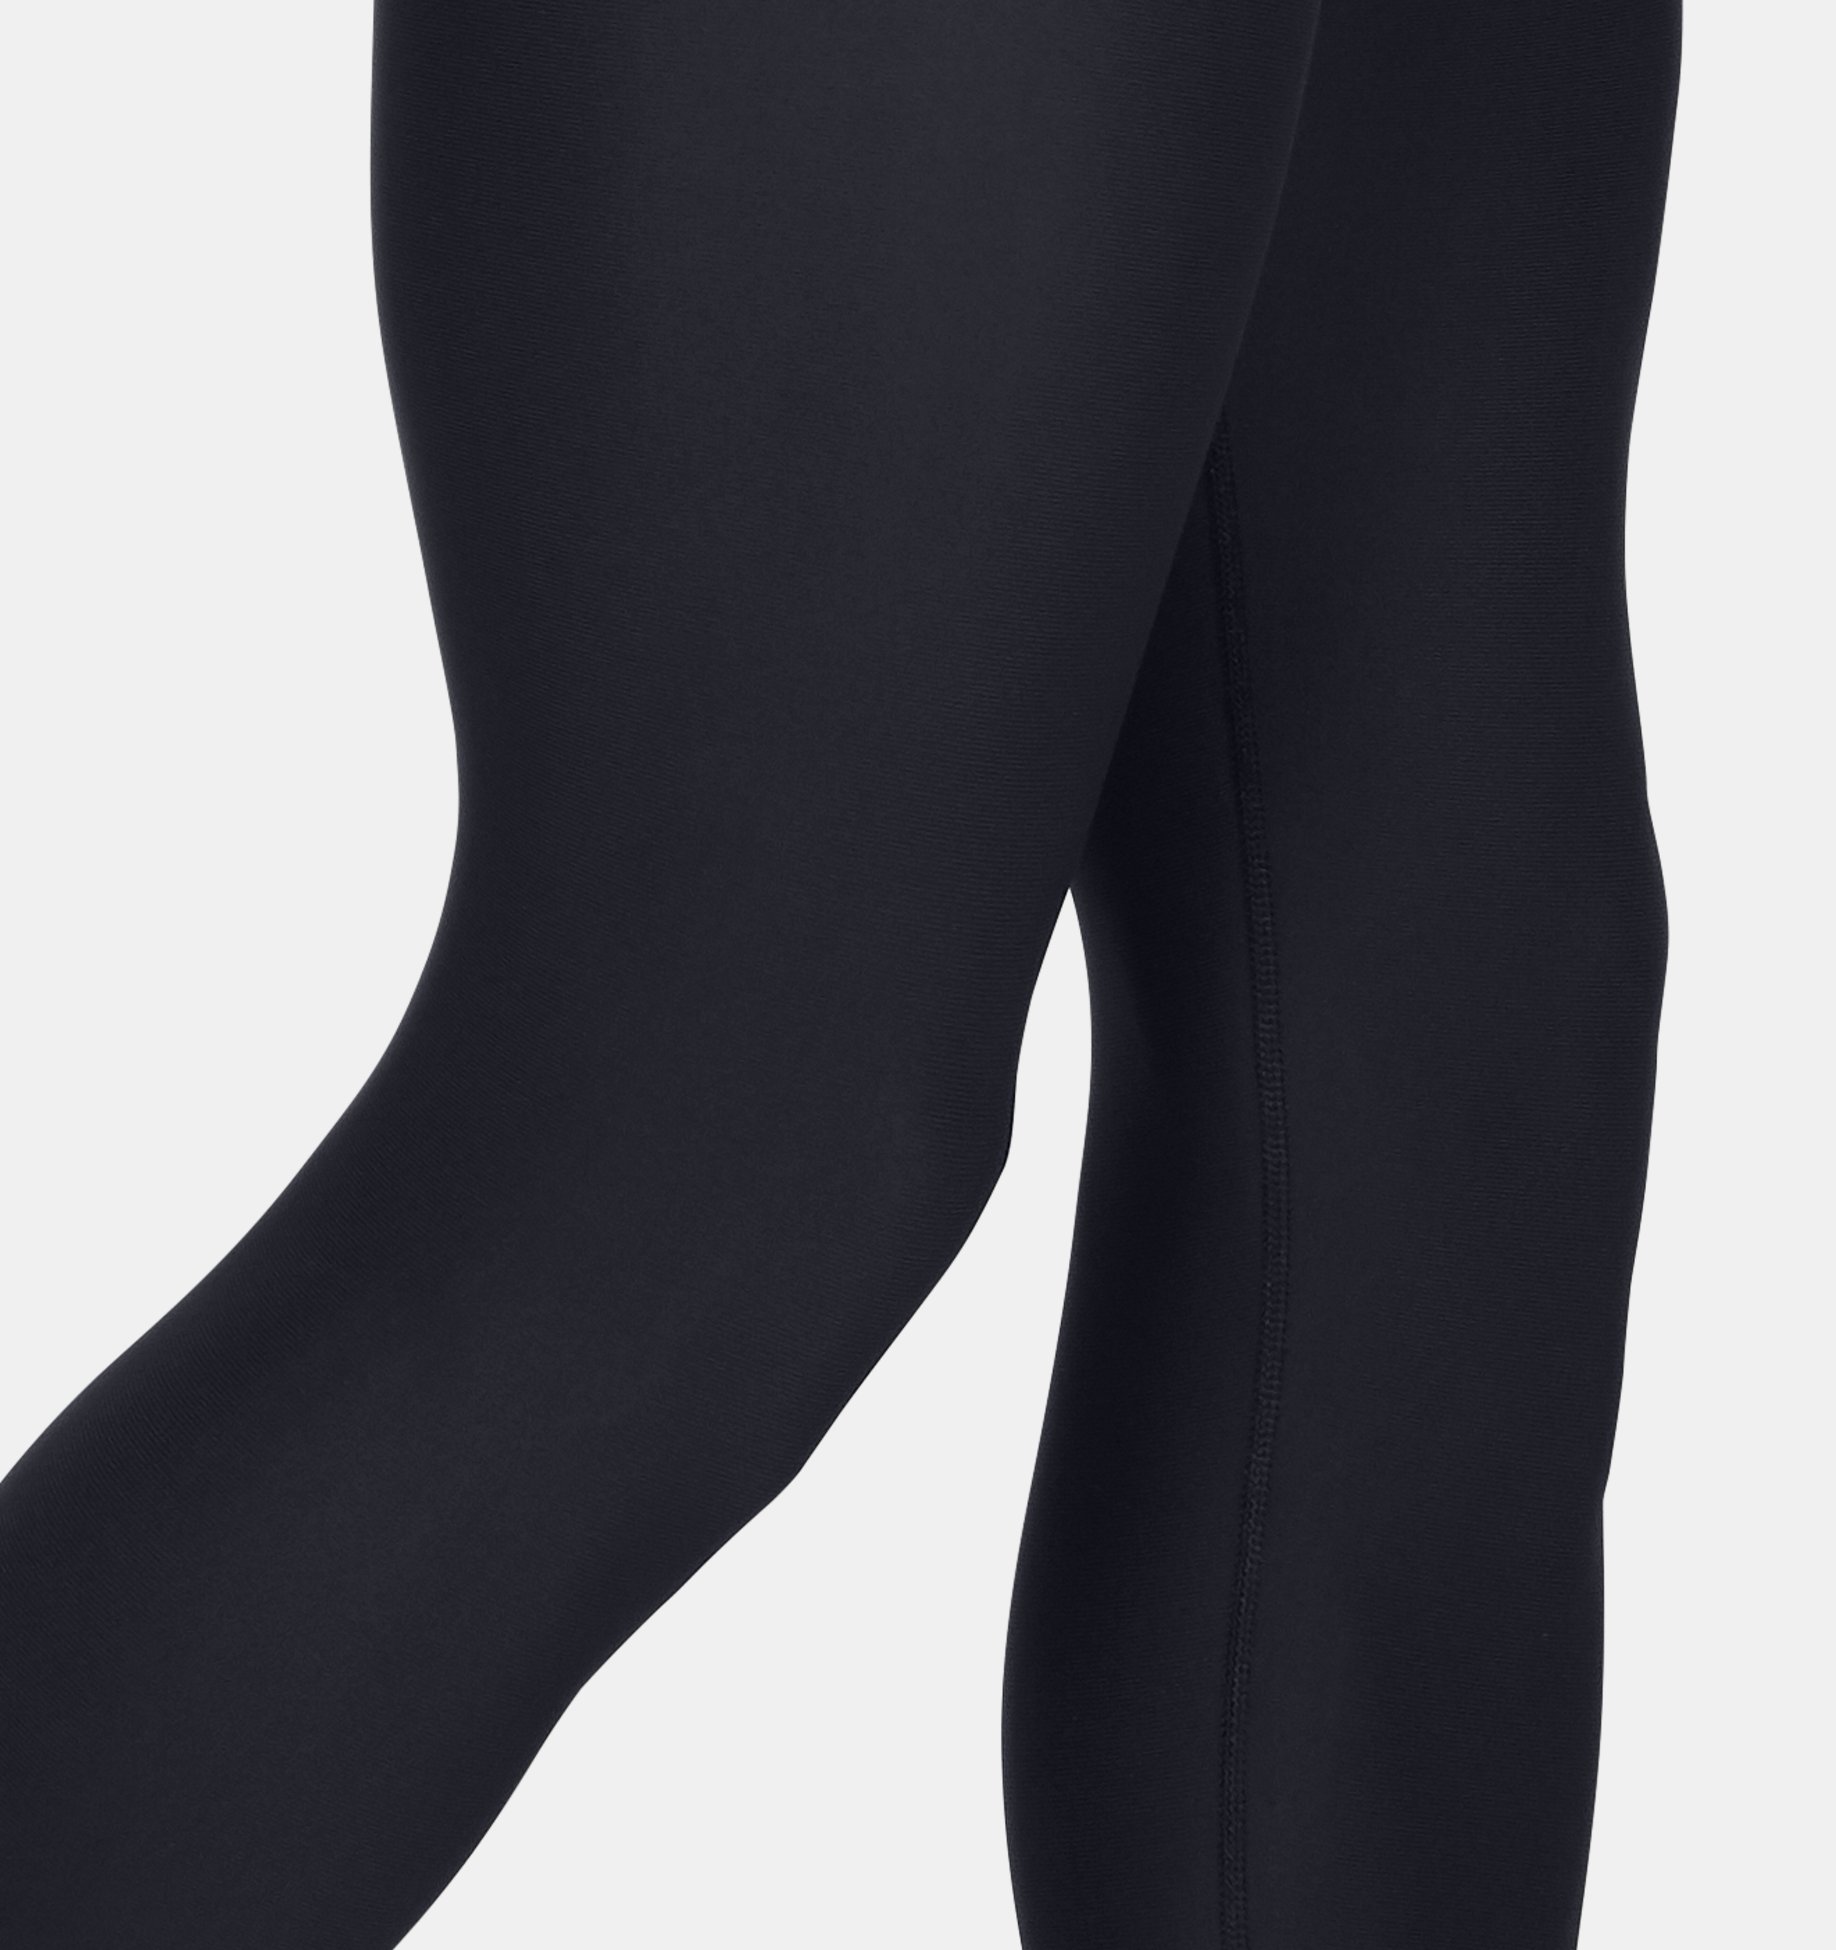 ATHLIO - Leggings deportivos de compresión para hombre, mallas para correr  y hacer ejercicio, con tecnología de secado rápido, paquete con 2 o 3